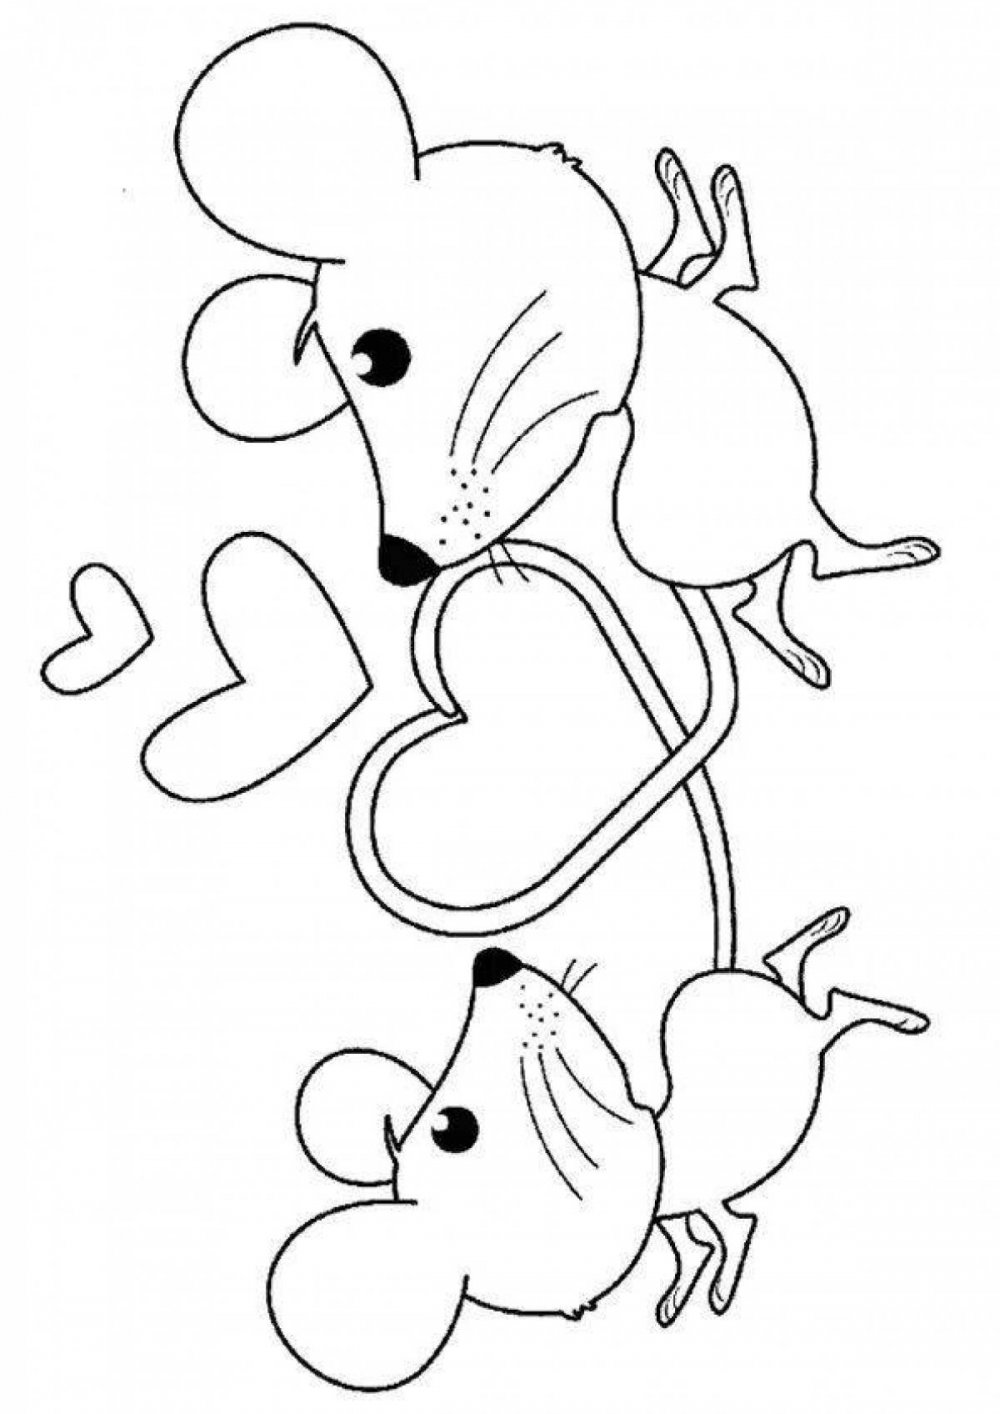 Мышь из сказки Теремок раскраска для детей